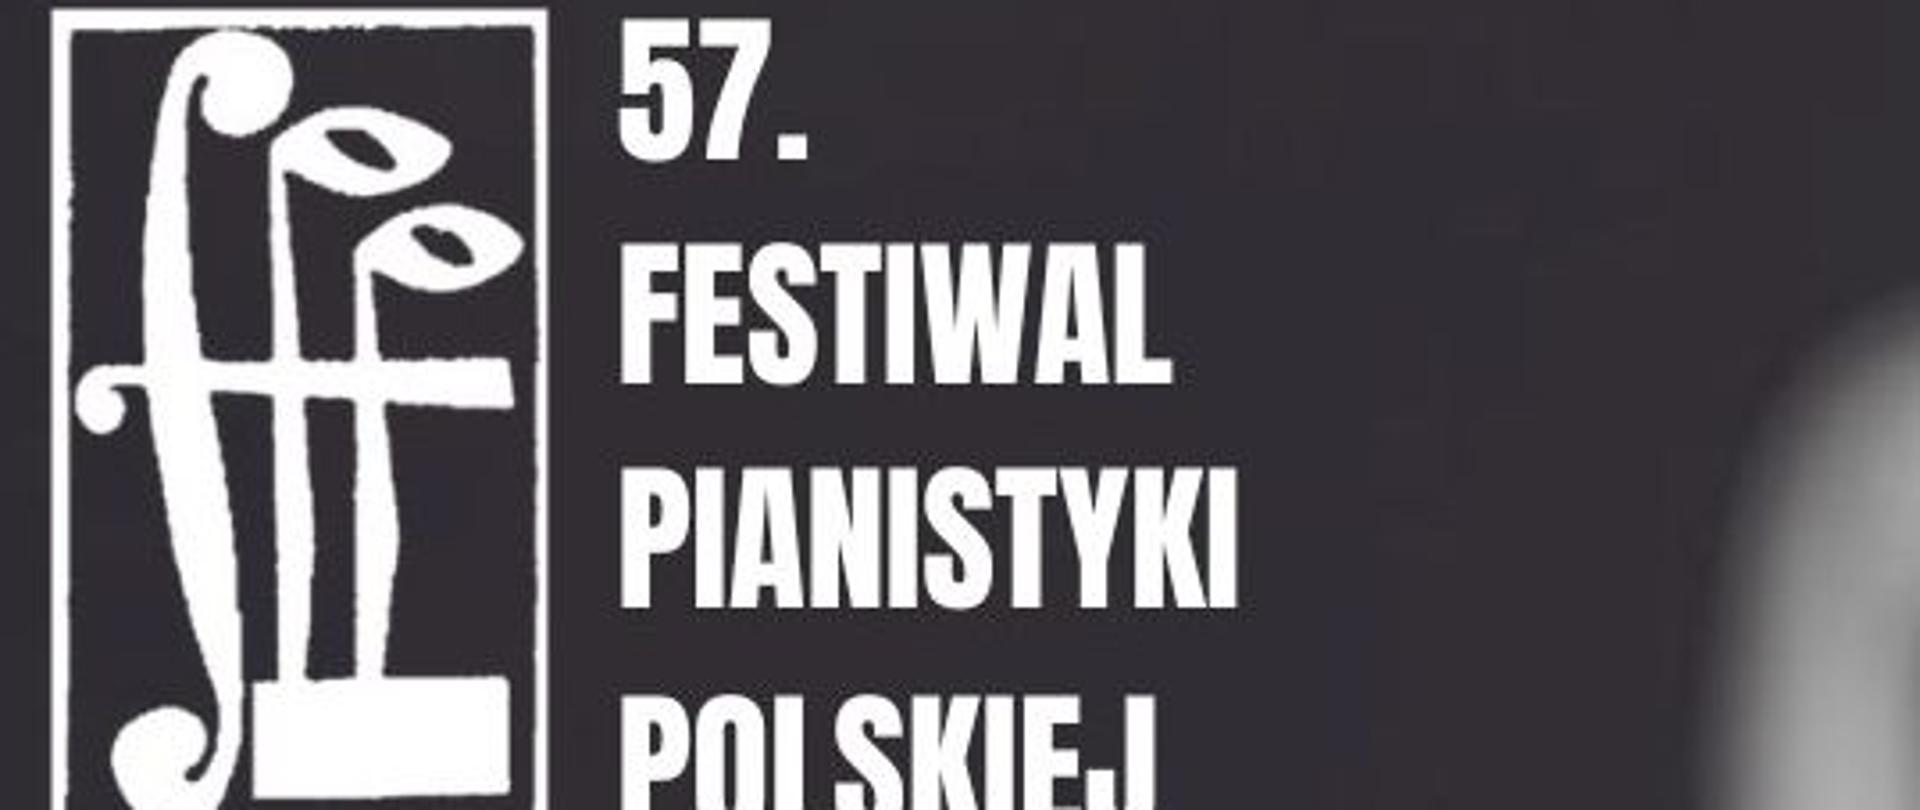 Grafika biało-czarna. Logo w postaci napisu i ikon z nutami. Treść napisu" 57 Festiwal Pianistyki Polskiej w Słupsku"